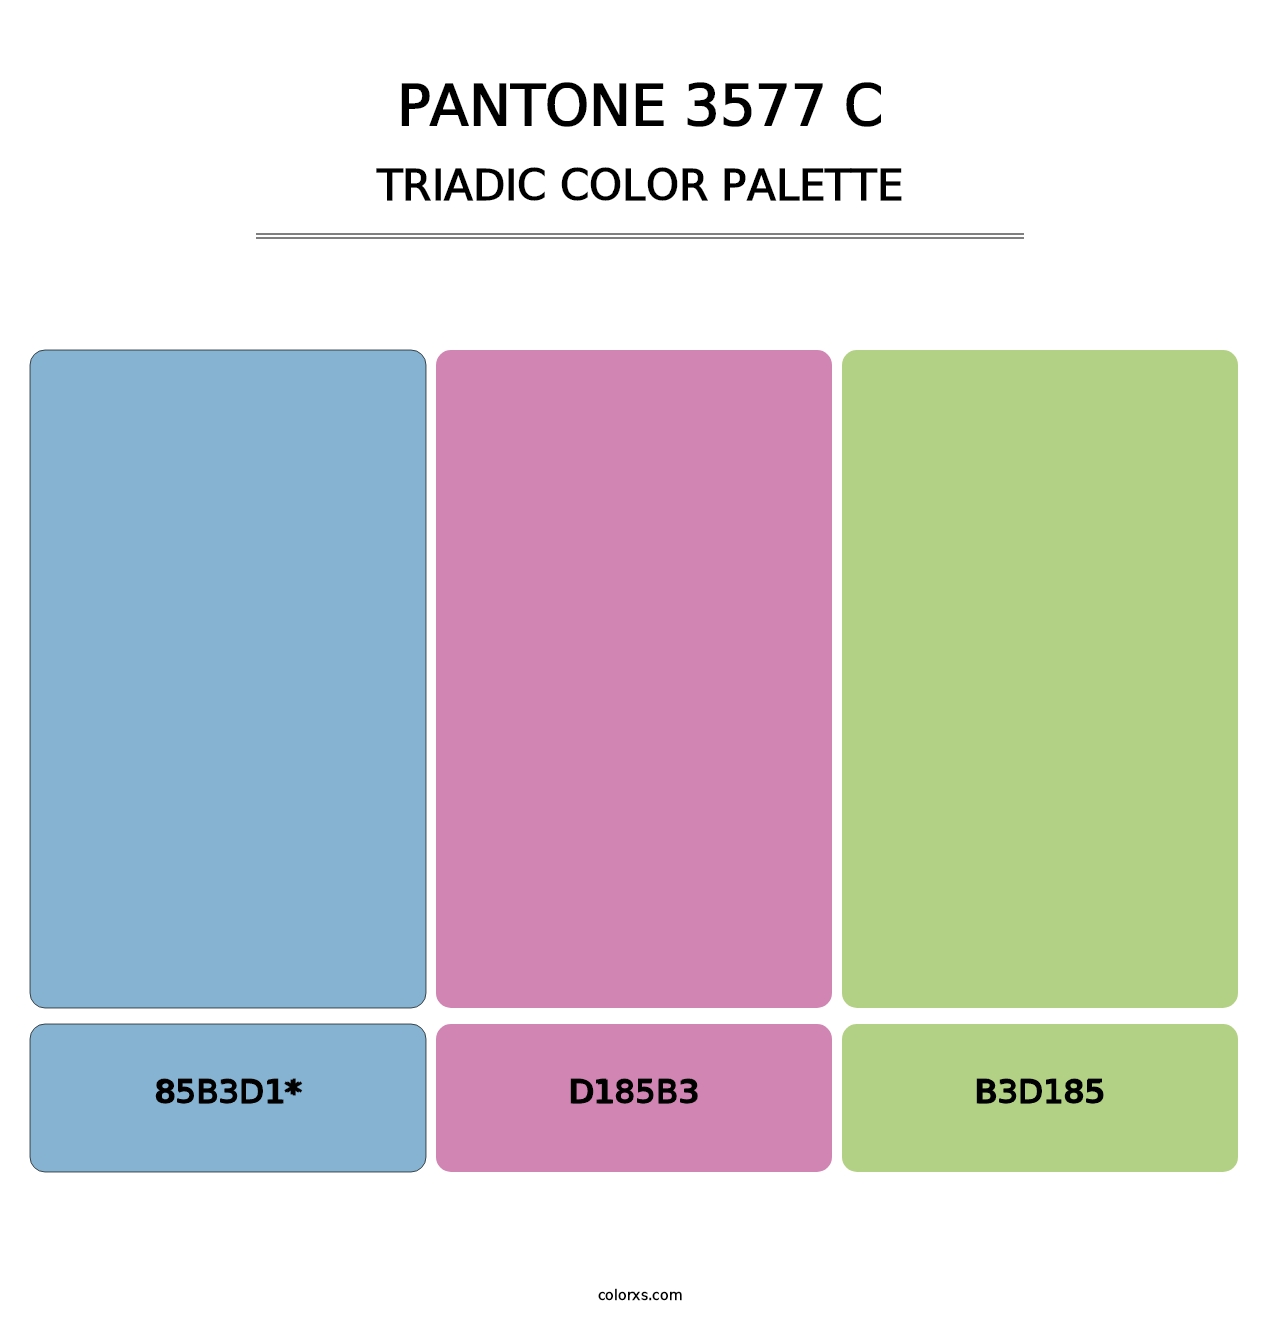 PANTONE 3577 C - Triadic Color Palette